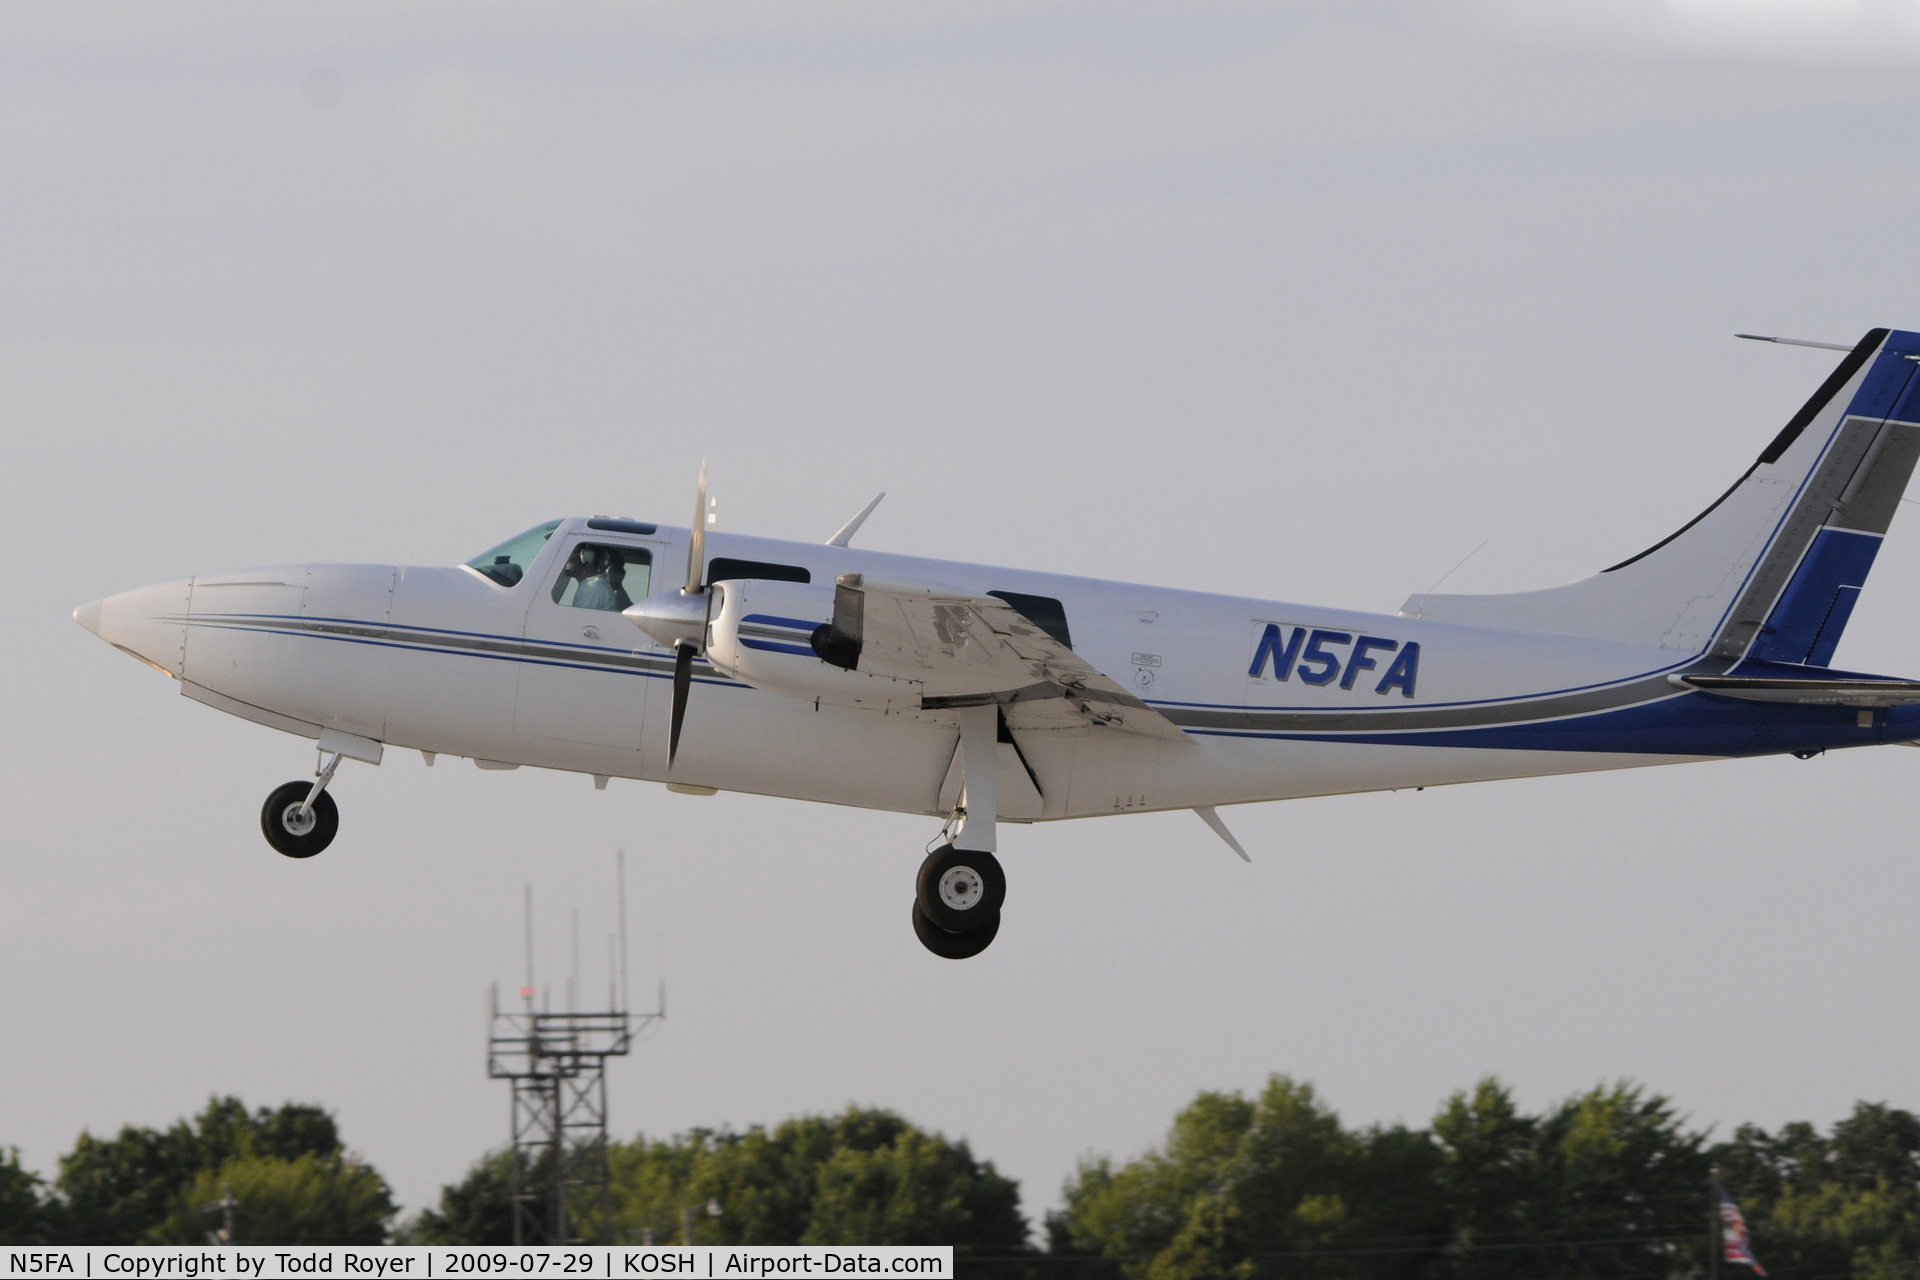 N5FA, Smith Aerostar 600 C/N 600310115, Departing OSH on 27